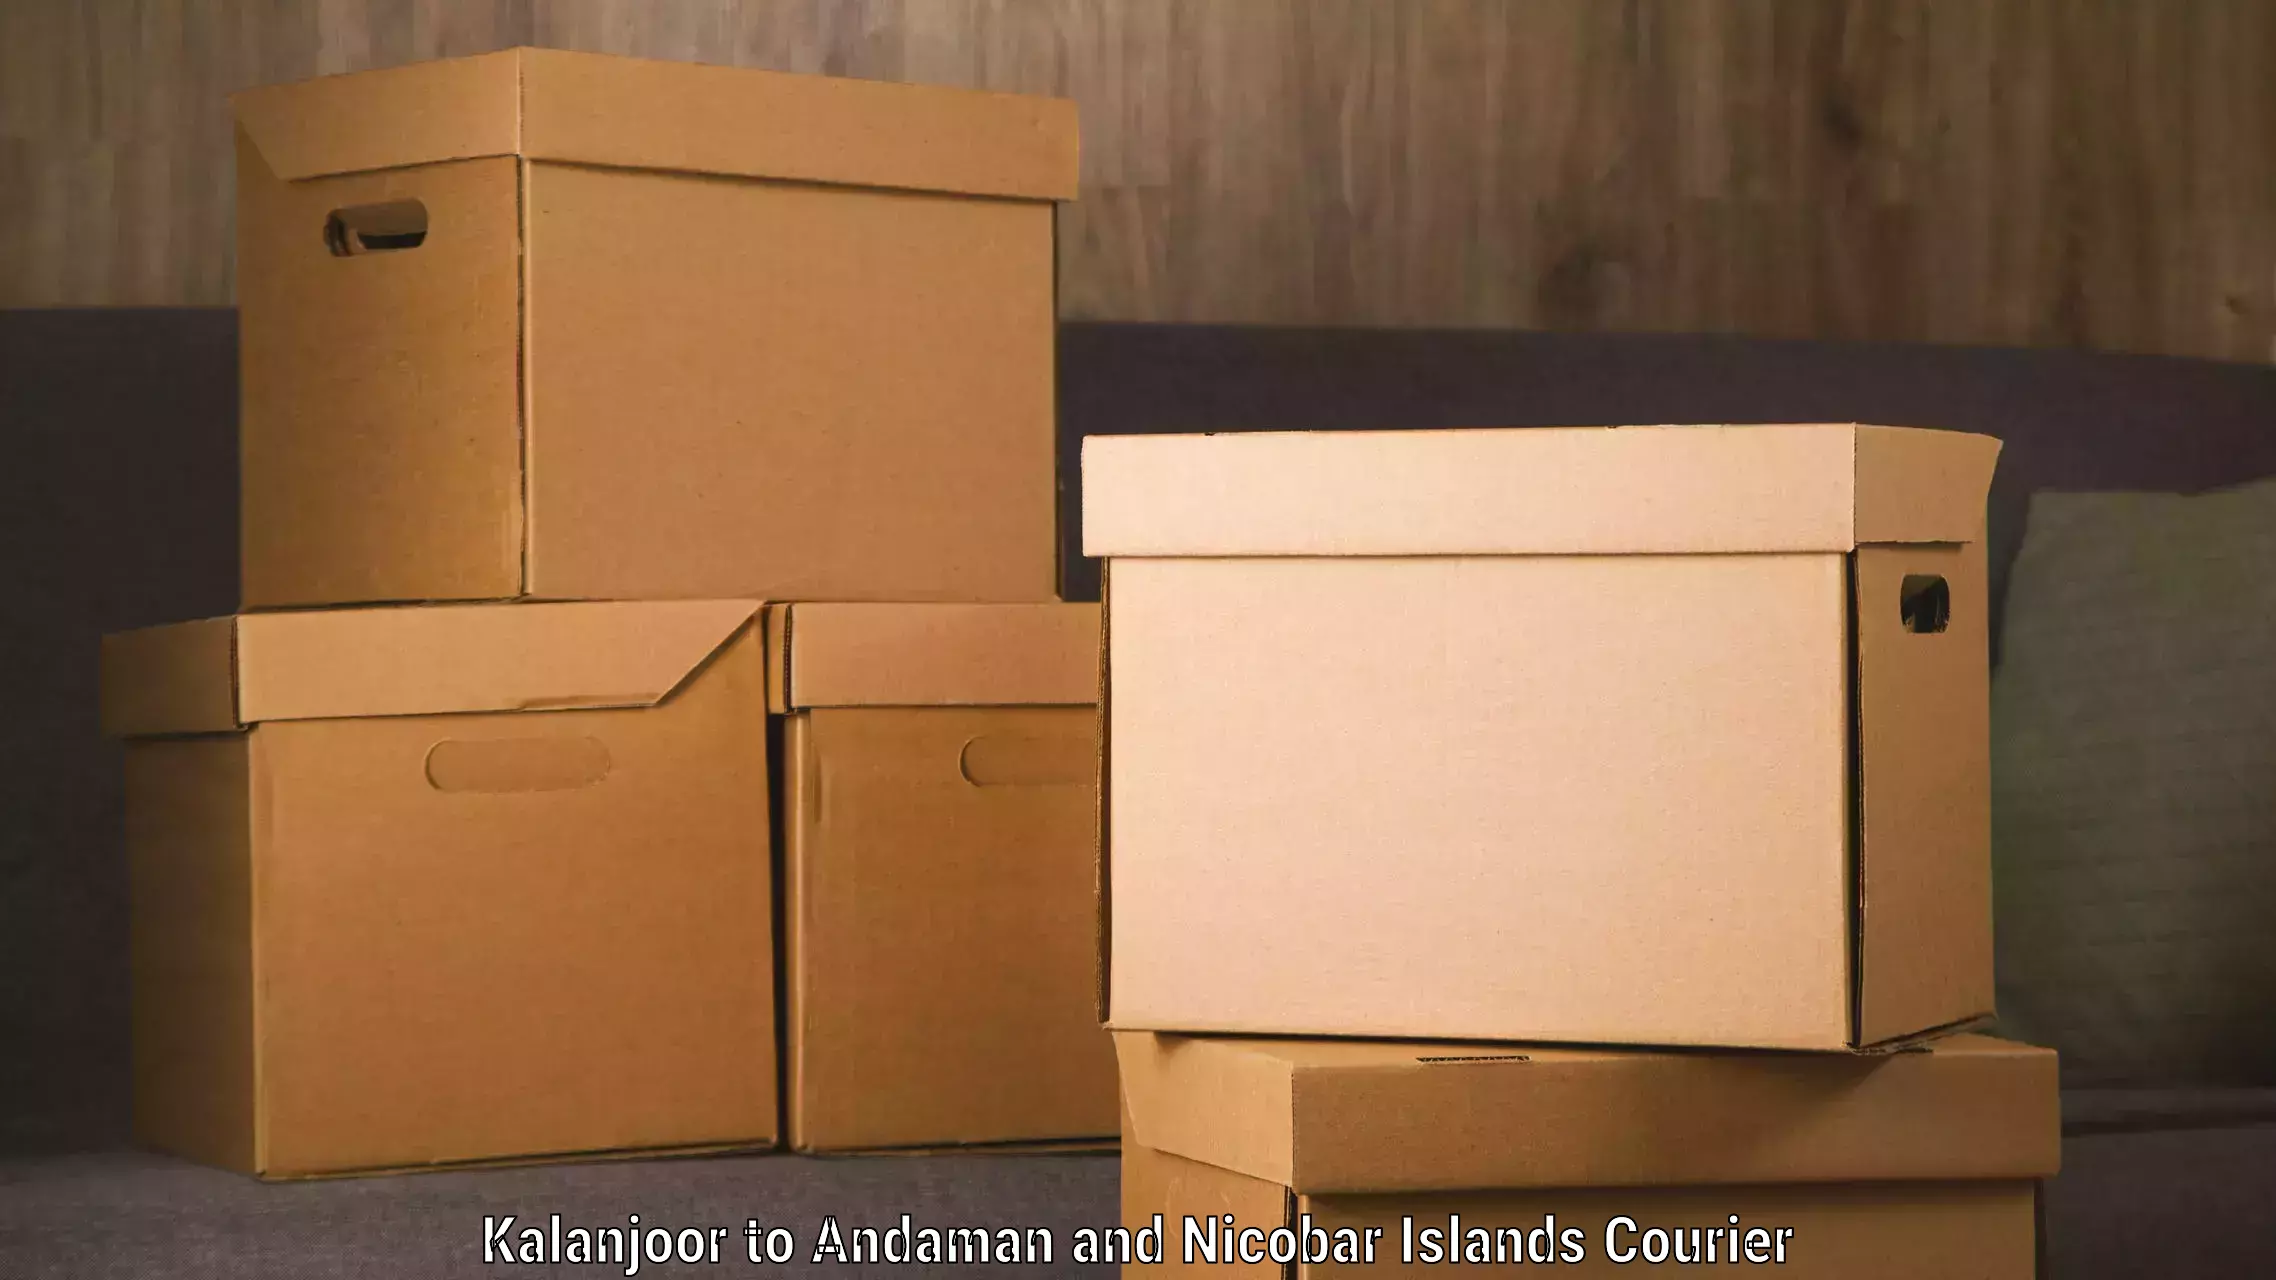 High-performance logistics in Kalanjoor to Andaman and Nicobar Islands